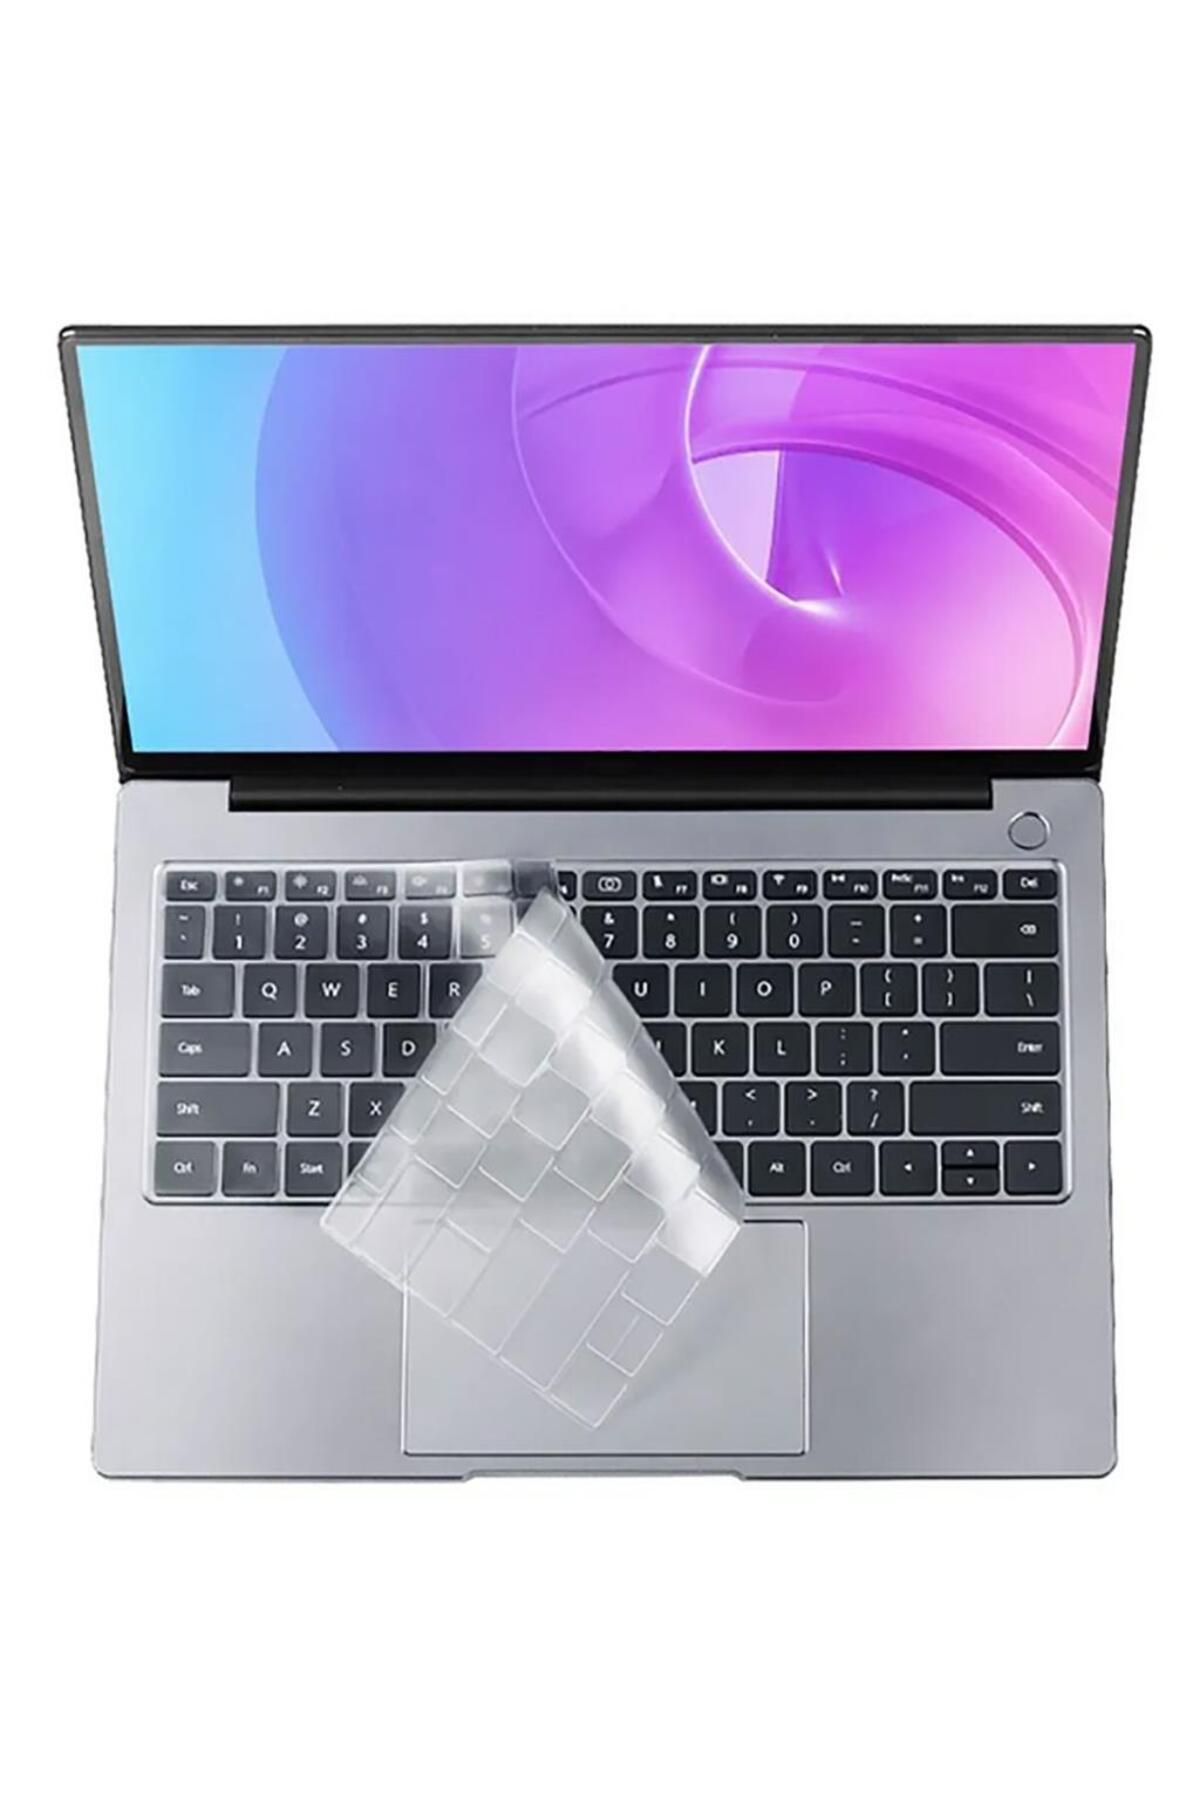 UnDePlus Apple Macbook 13' 2017 A1466 Klavye Koruyucu Transparan Buzlu Silikon Ped